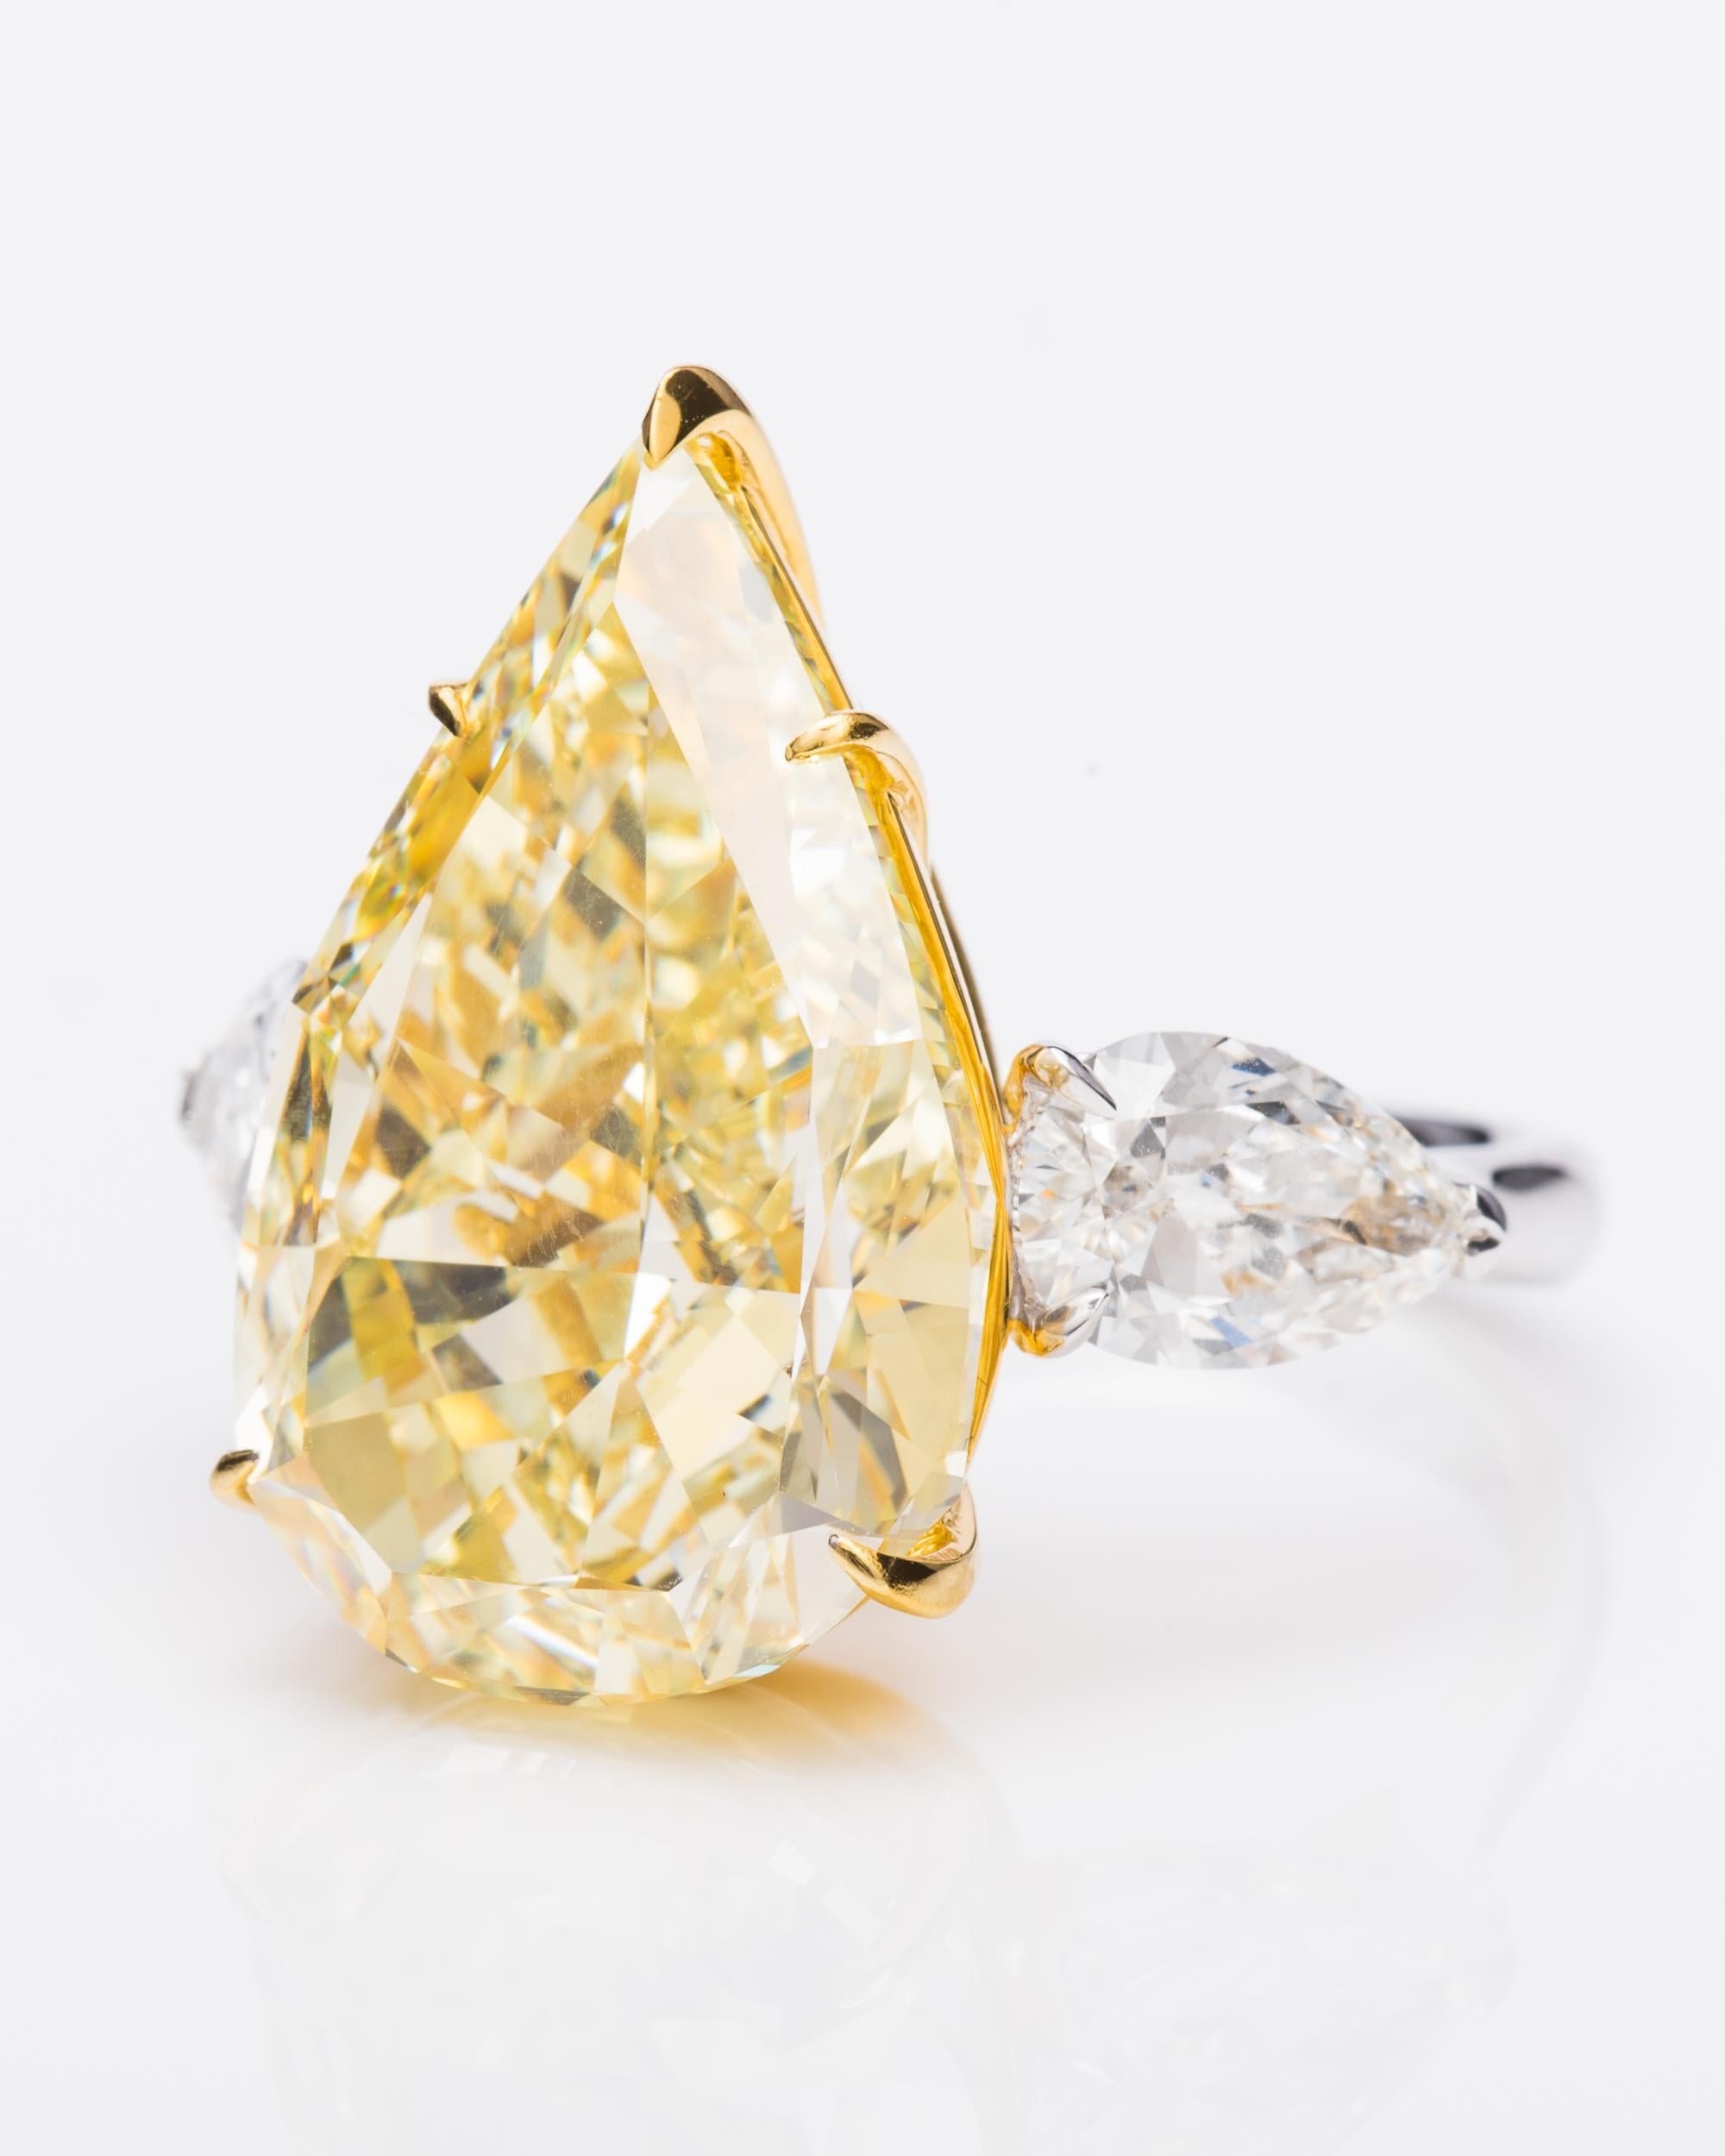 Dieses Stück ist nur auf Bestellung erhältlich. 

Nur wenige Formen sind so elegant und zart wie die Birnenform. Vihari Jewels entwarf diesen 13,50 Karat schweren gelben Fancy-Diamanten (GIA-Zertifikat #2181120671) für einen anspruchsvollen Sammler